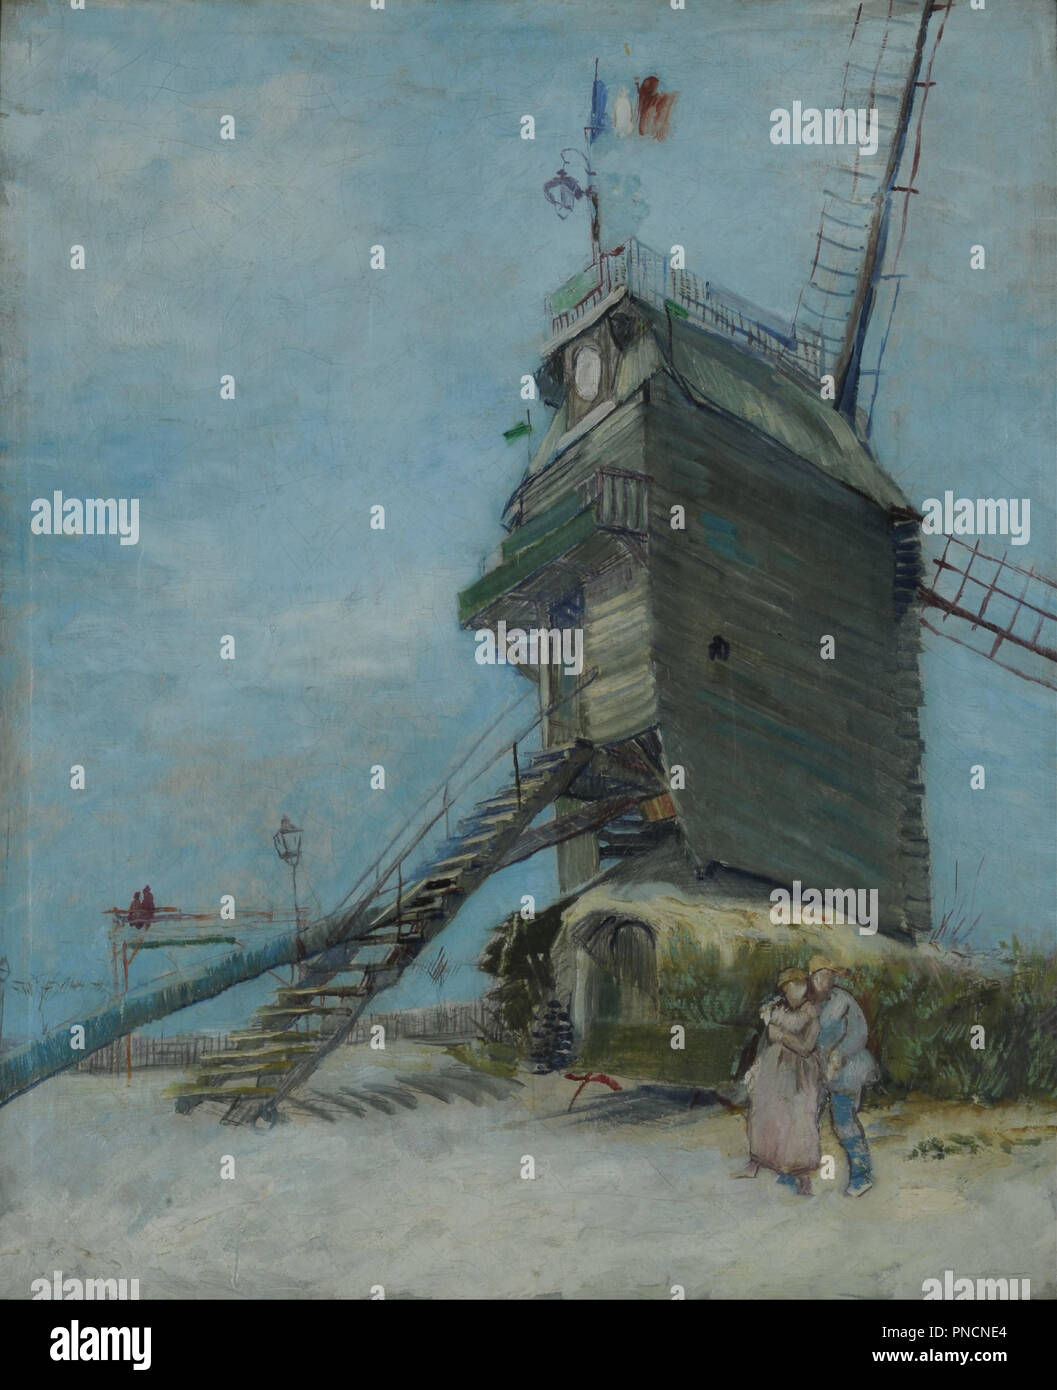 Le Moulin de la Galette. Fecha/período: Ca. 1886/ 1887. La pintura. Óleo sobre lienzo. Altura: 610 mm (24.1 in); Ancho: 500 mm (19,68). Autor: Vincent van Gogh. VAN GOGH, Vincent. Foto de stock